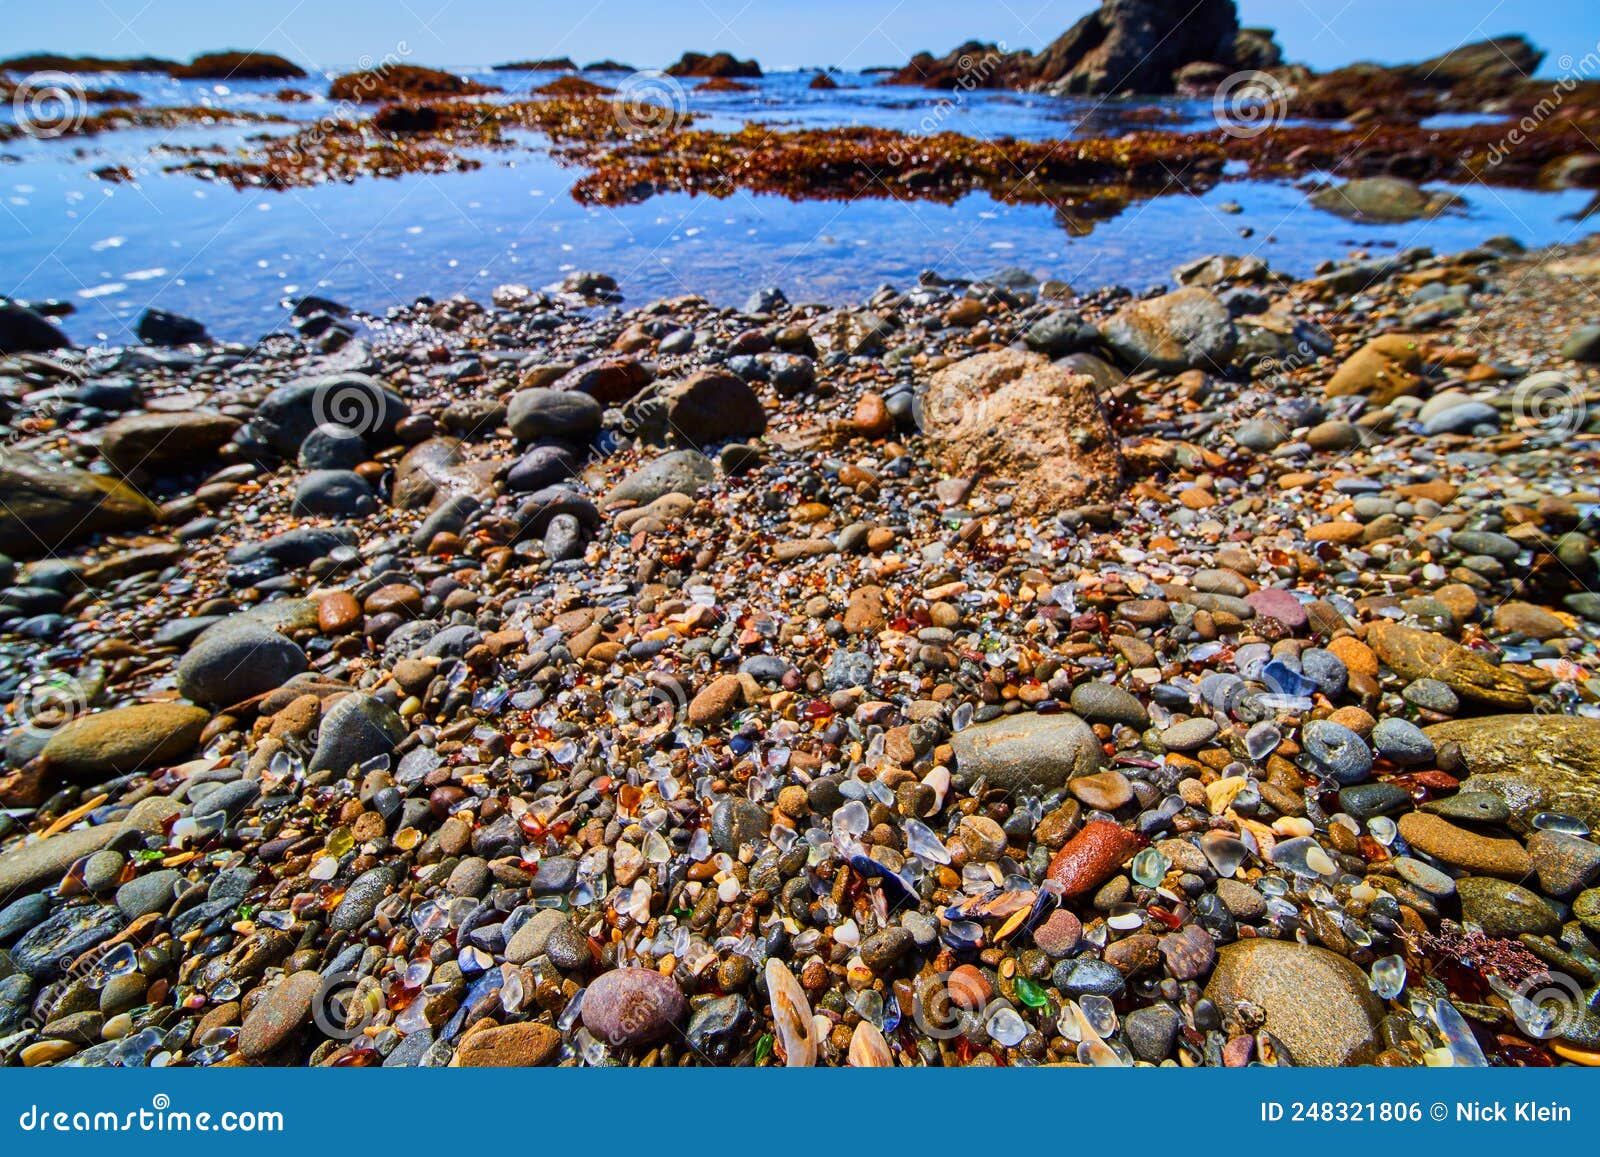 全球16座最独特的迷人沙滩 (一) ---- 加利福尼亚 | 玻璃海滩 - 知乎